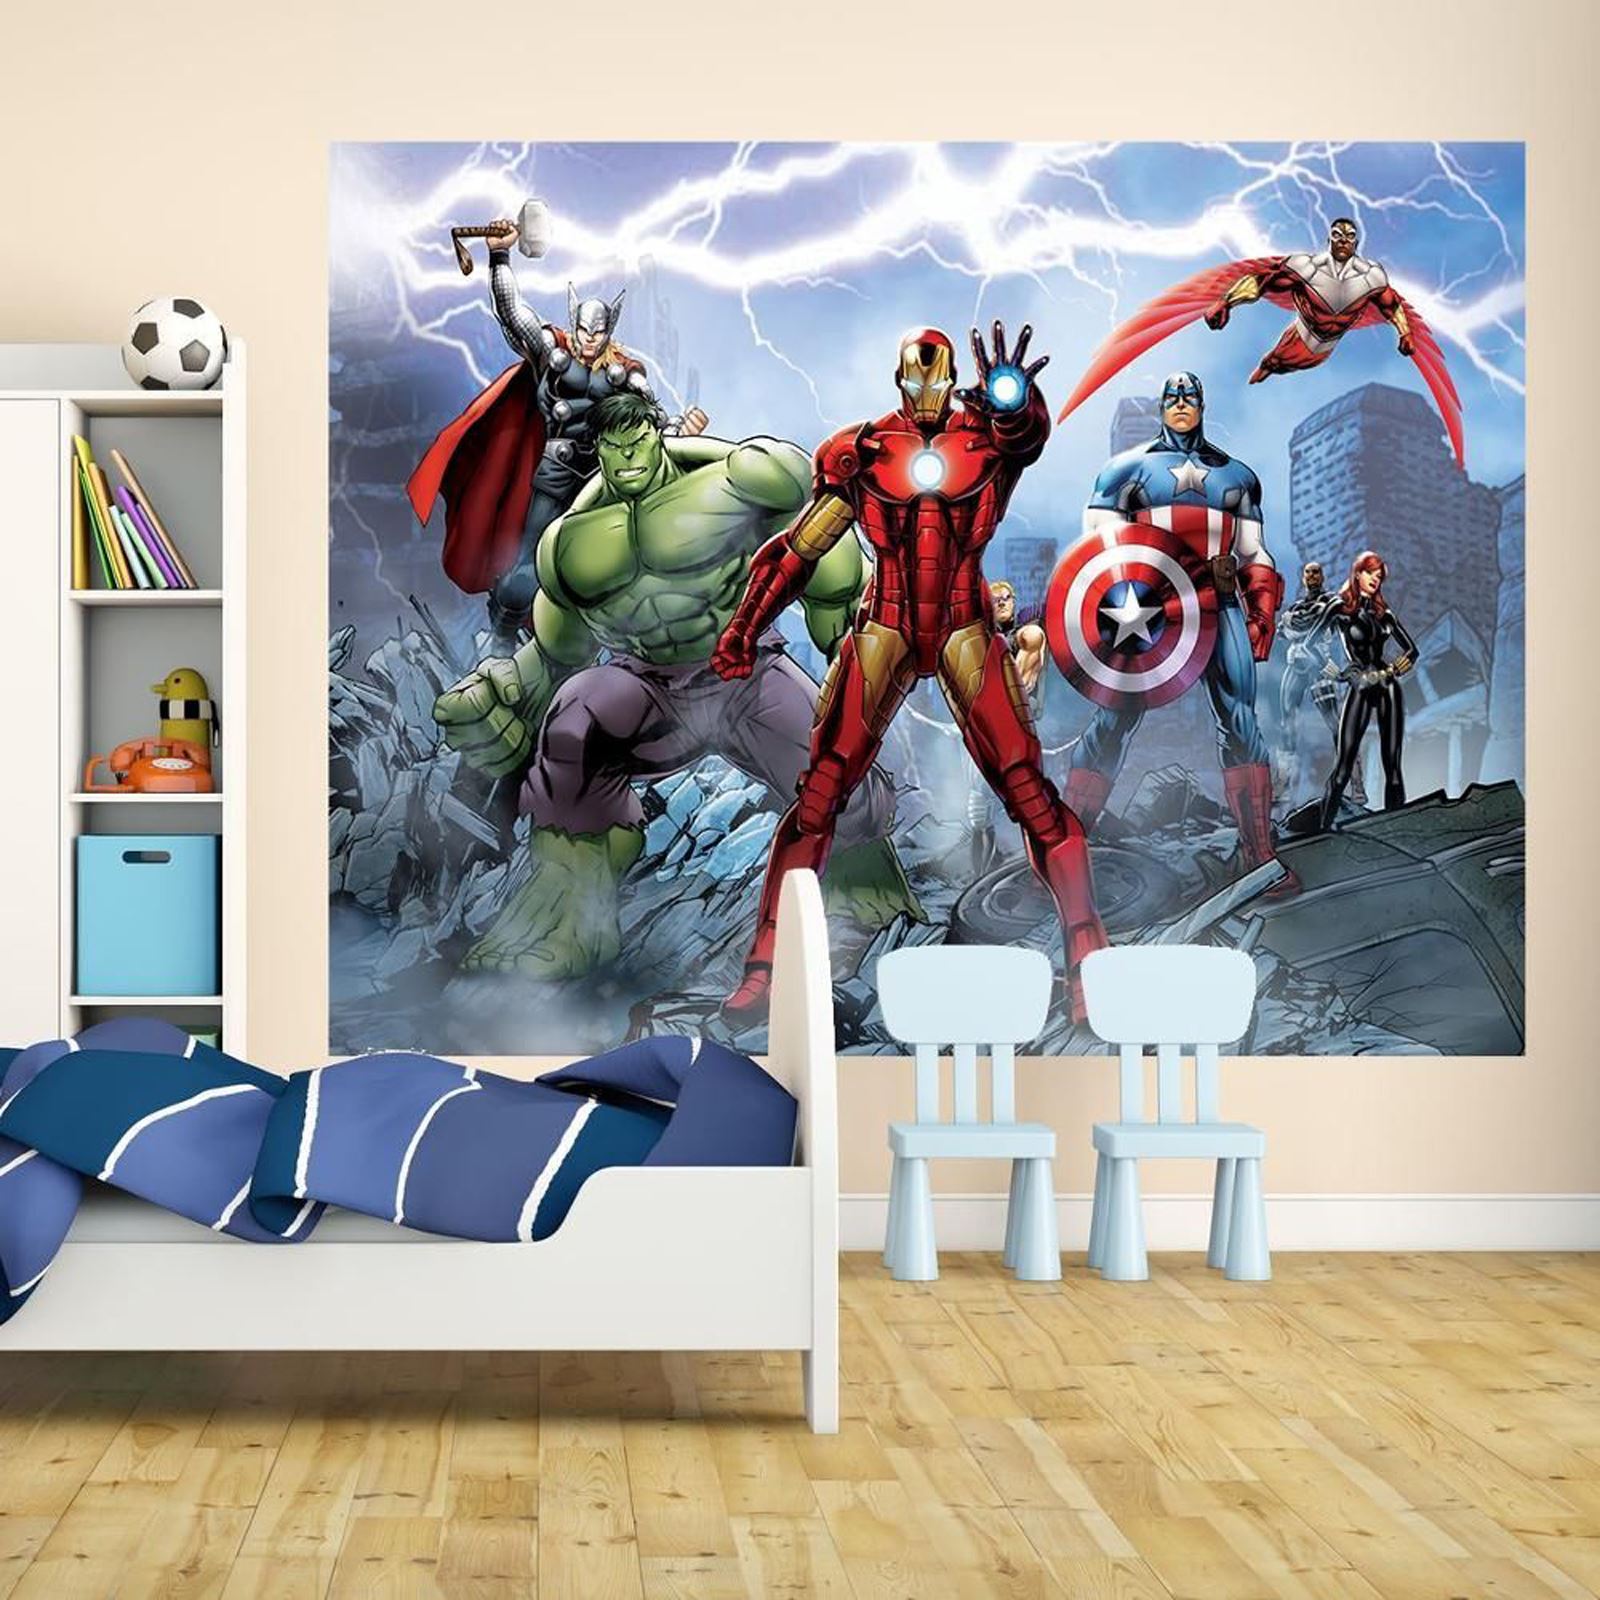 Marvel Ics And Avengers Wallpaper Wall Murals Decor Bedroom